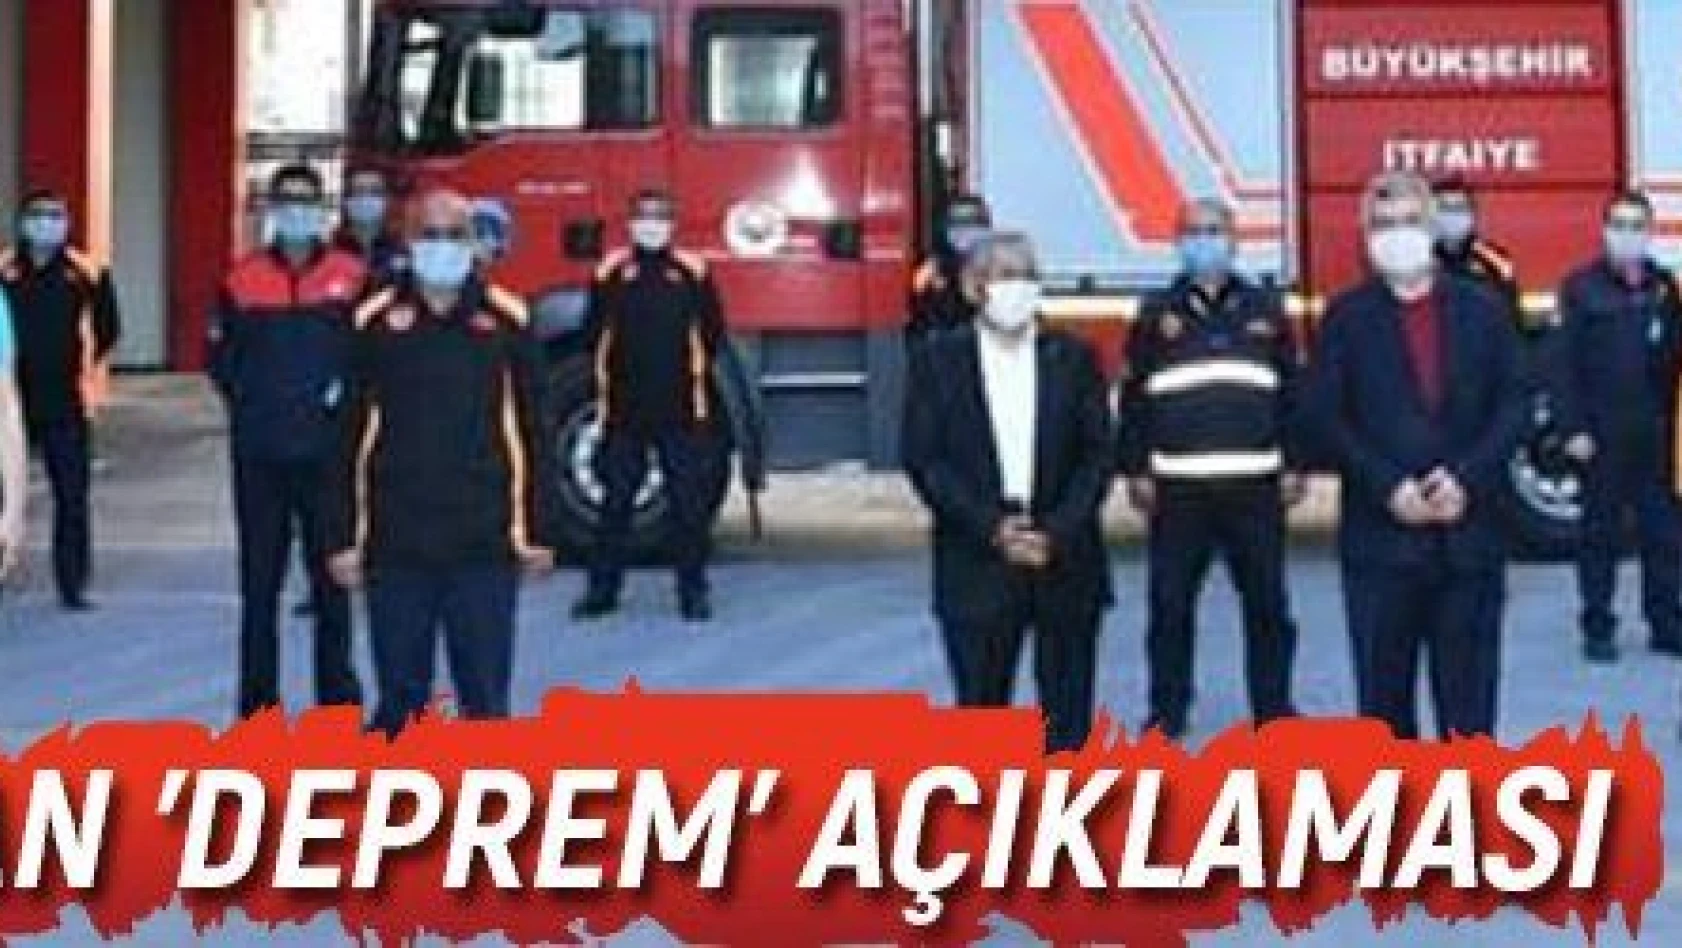 Büyükkılıç'tan 'Deprem' açıklaması